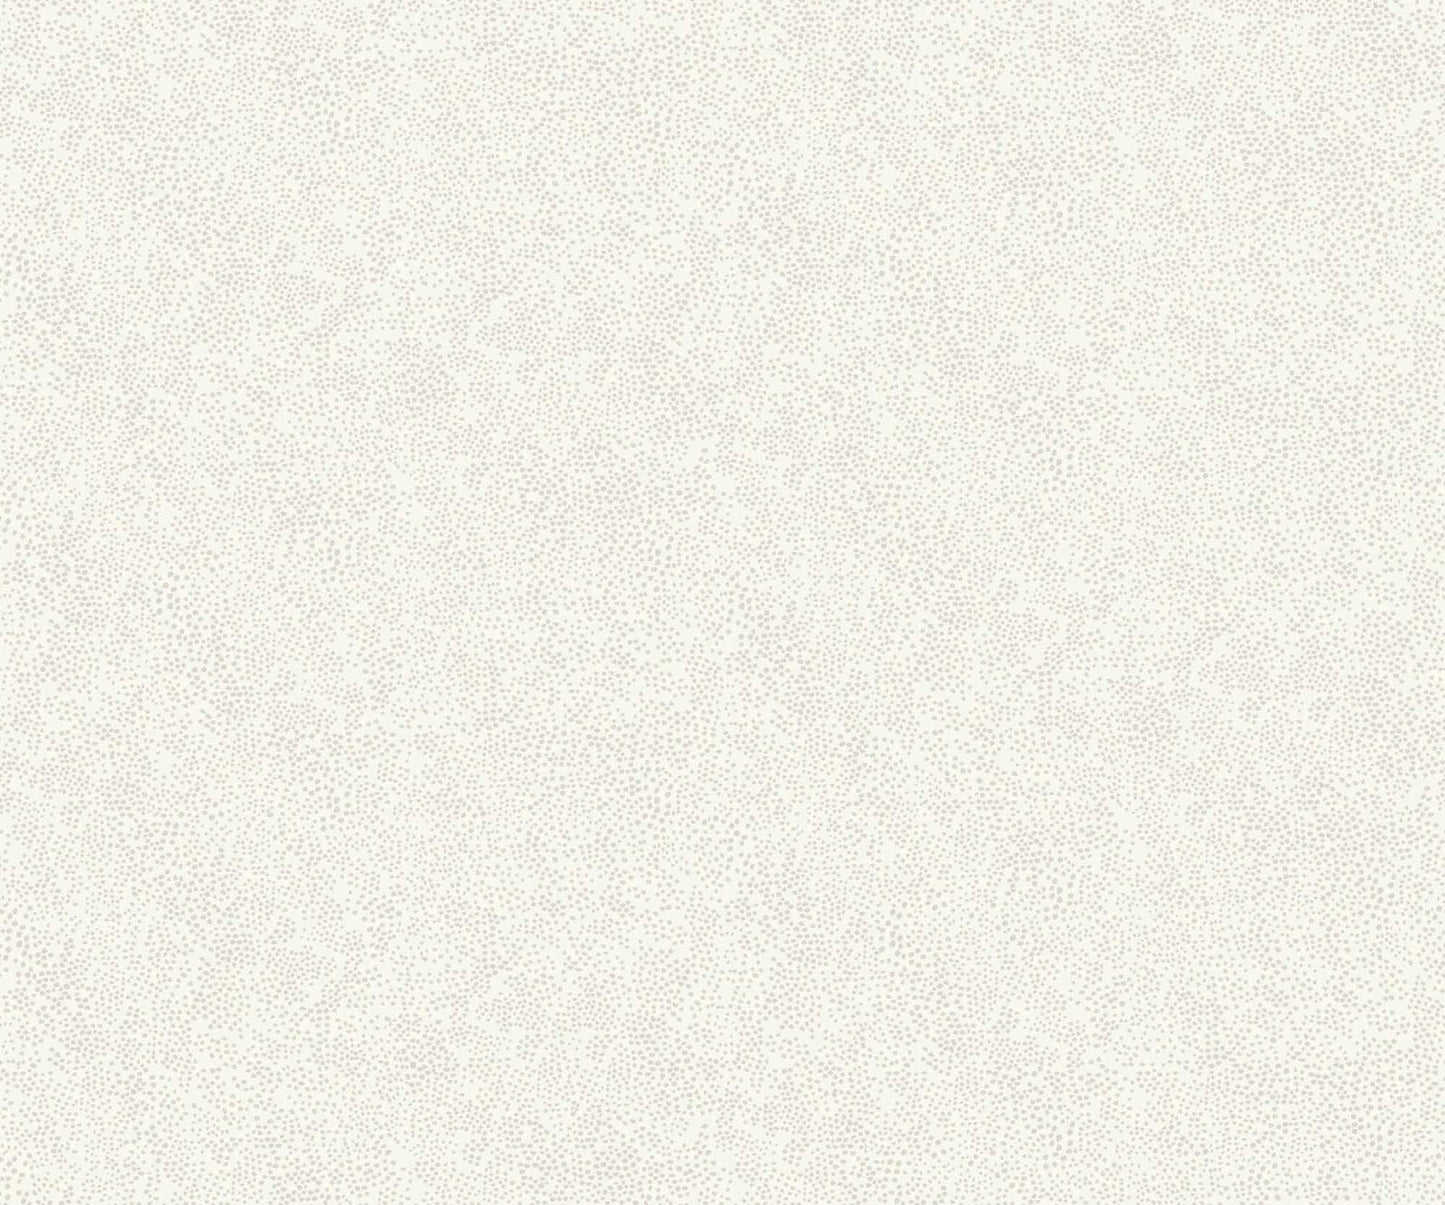 Champagne Dots Wallpaper - White - Rifle